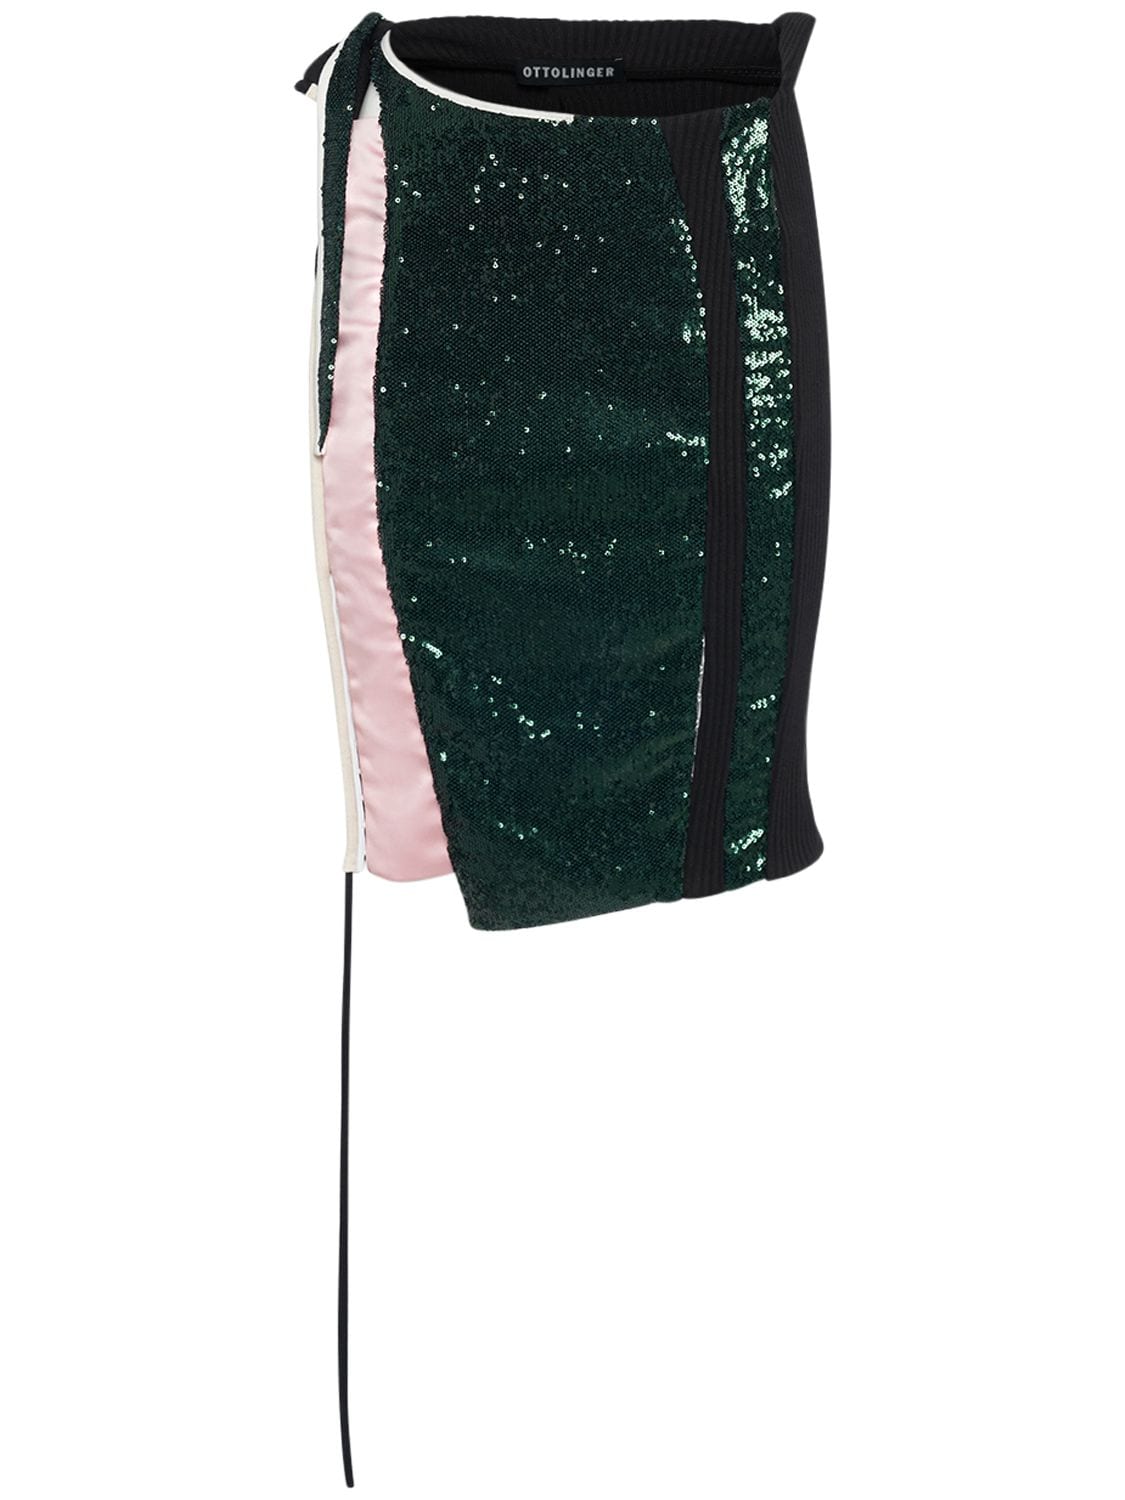 OTTOLINGER Deconstructed Sequined Skirt